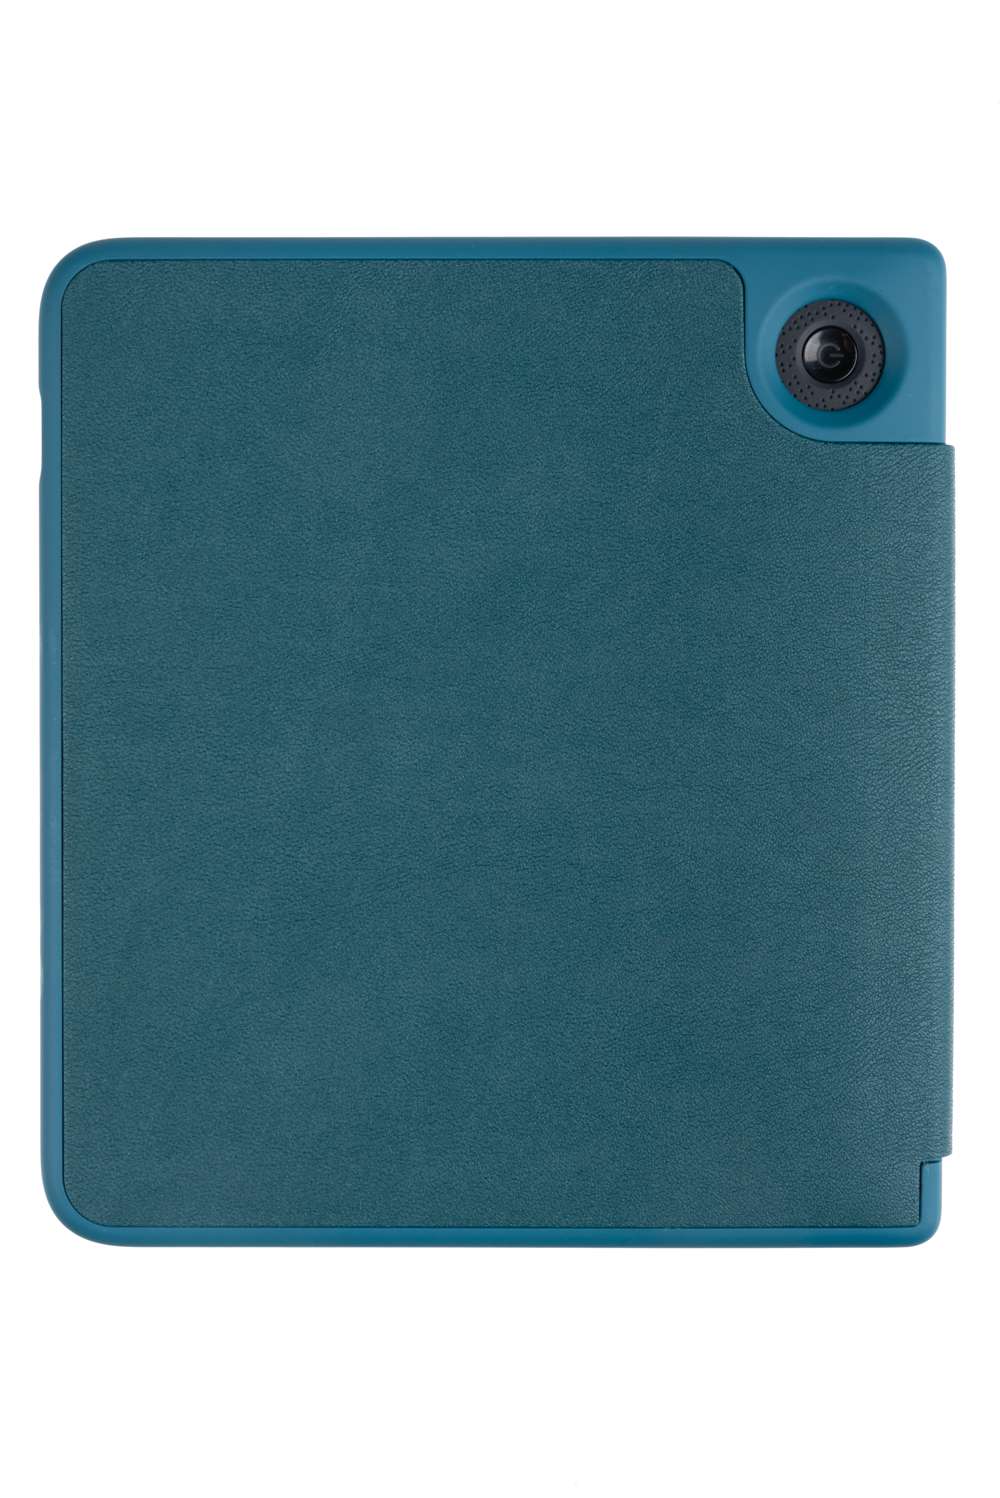 E-Reader case - Kobo Libra 2 & Tolino Vision 6 - Gecko Covers COM